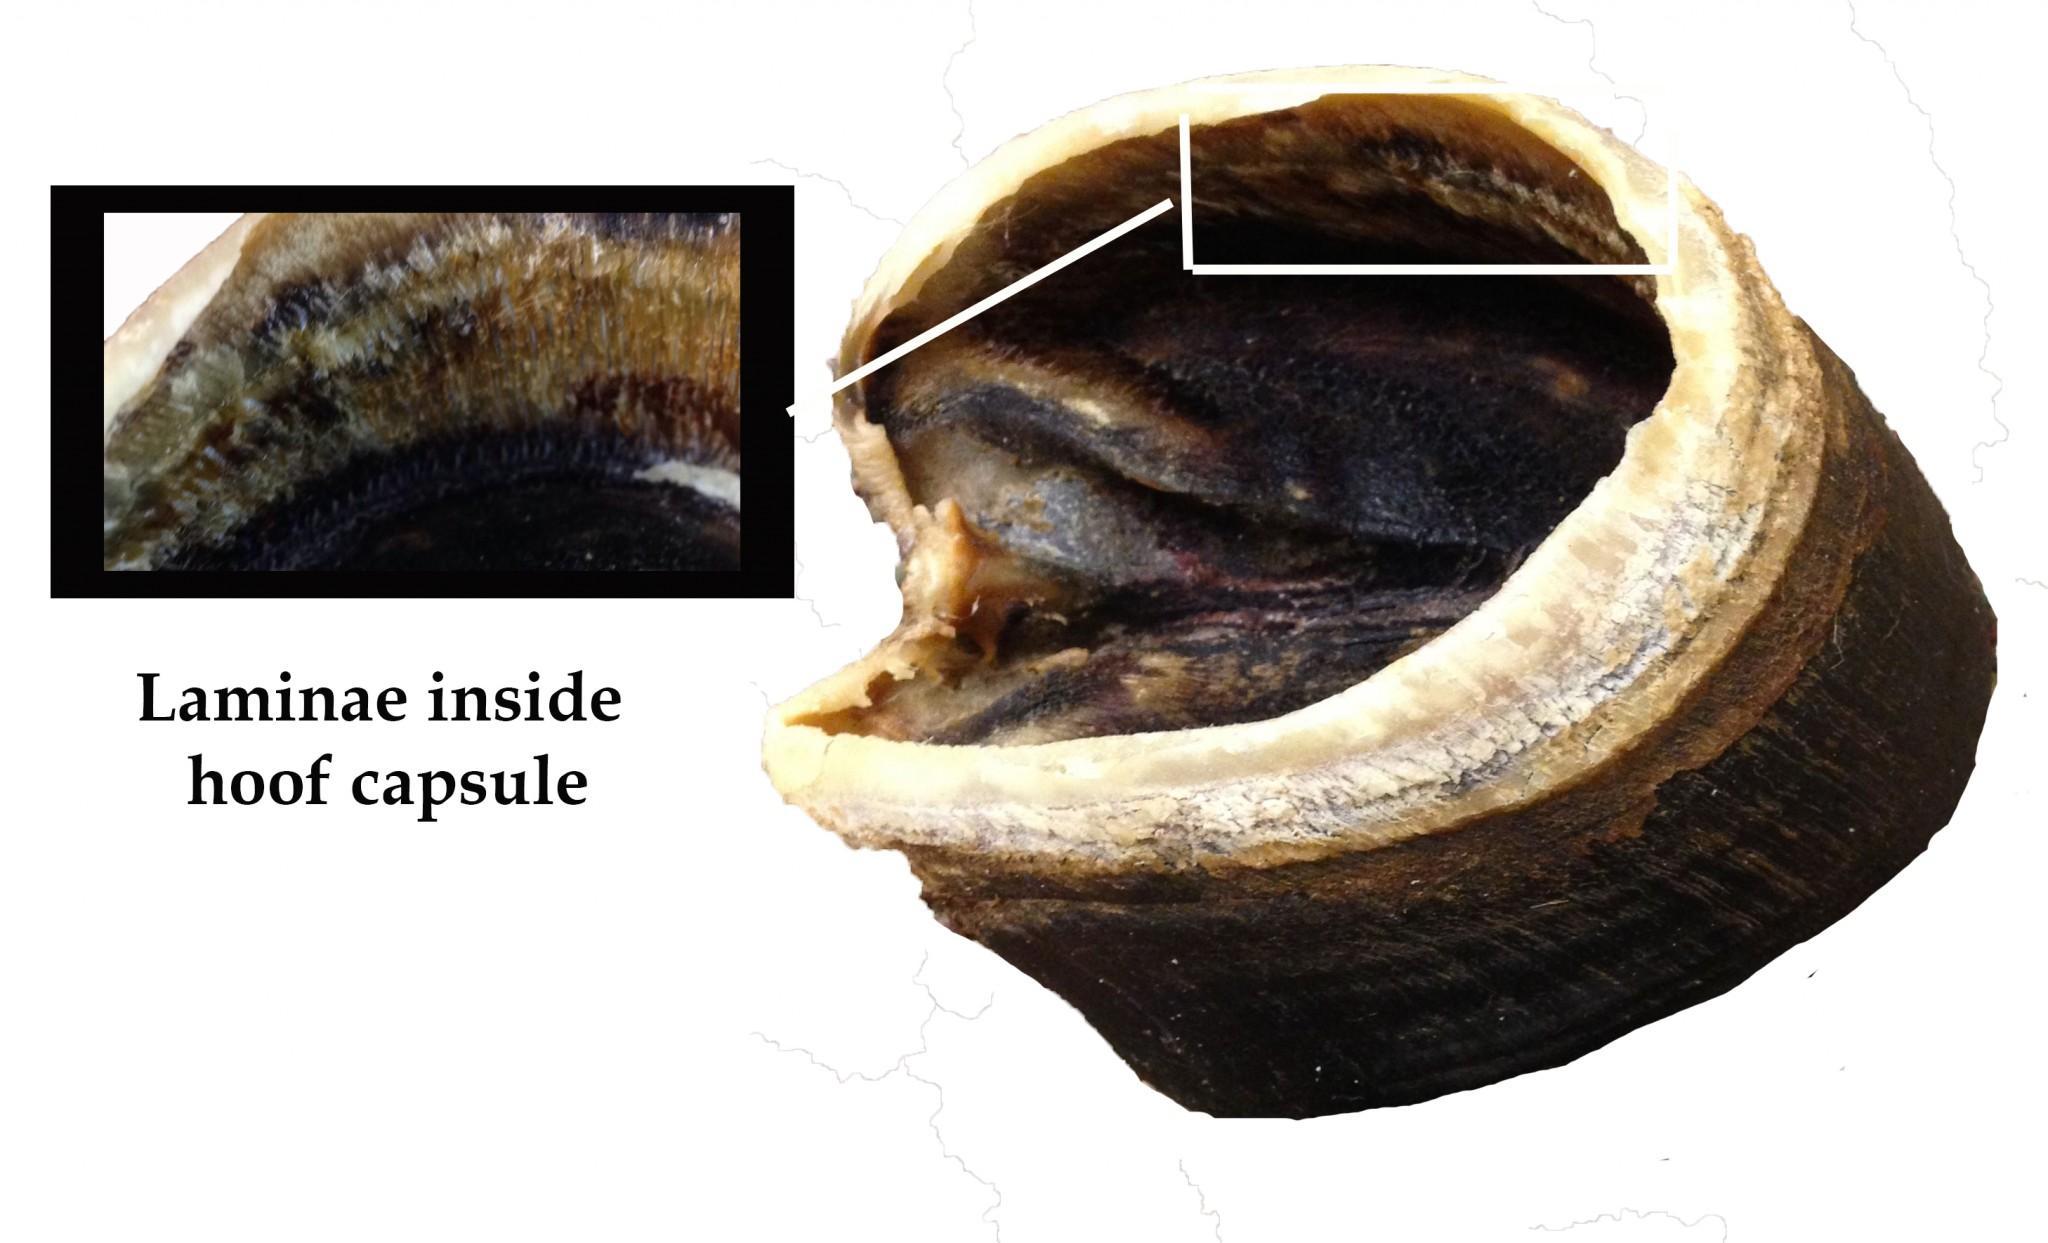 The finger-like laminae inside the hoof capsule look like whale baleen. Photo credit Dixie Crowe